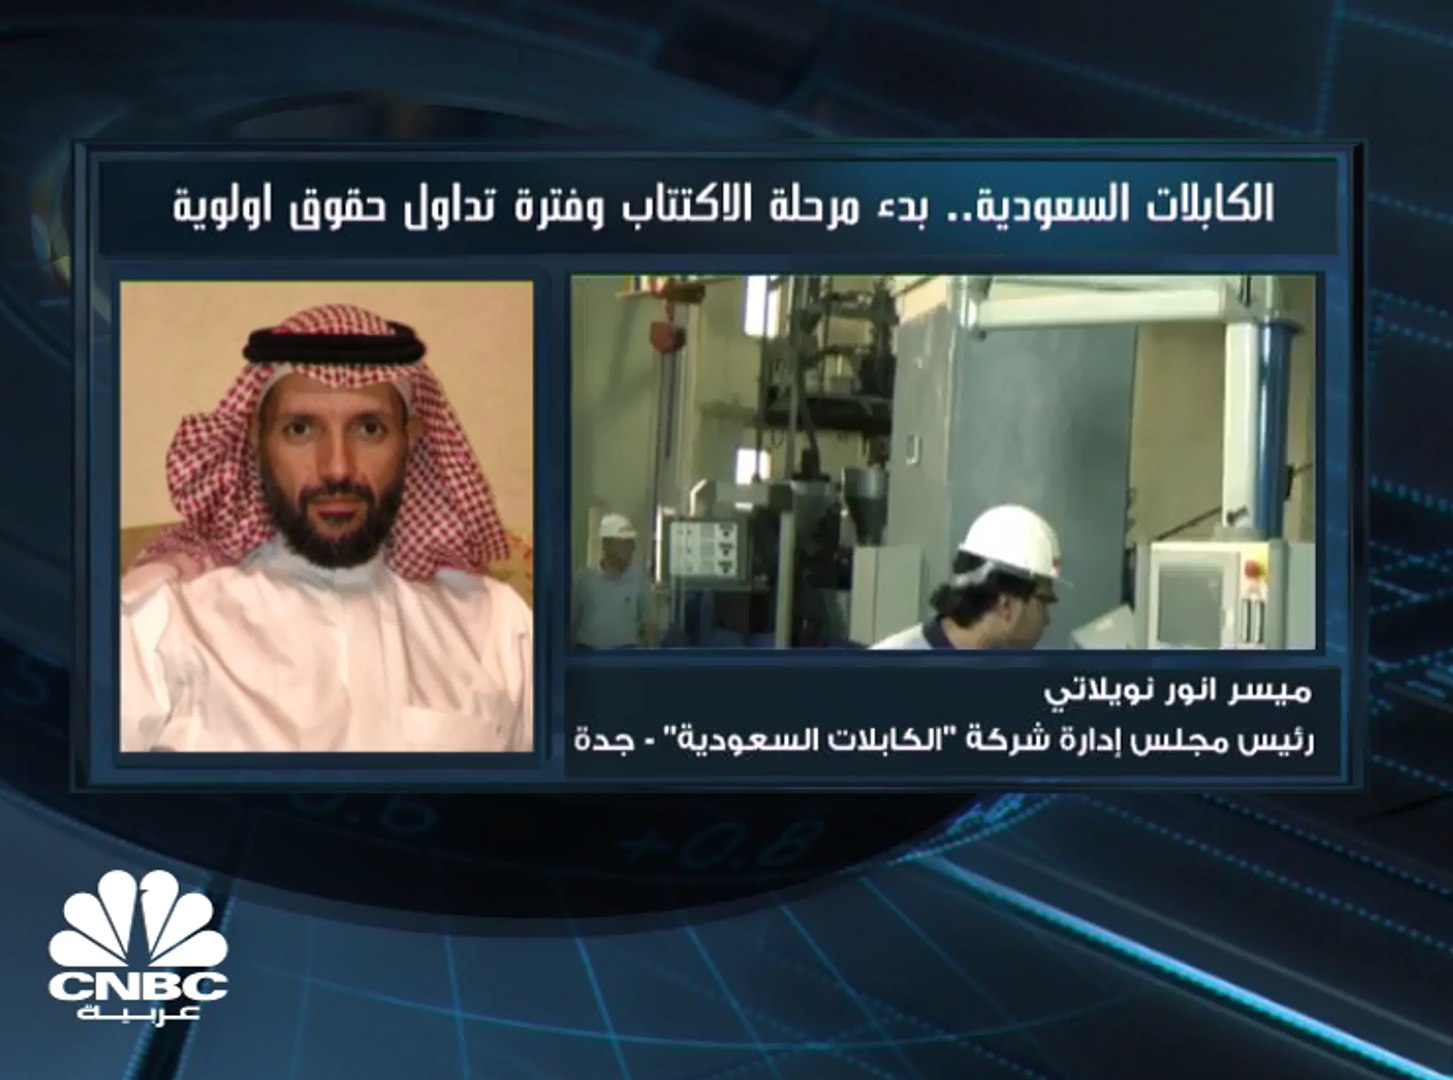 رئيس مجلس إدارة الكابلات السعودية لـCNBC عربية: زيادة رأس المال لن تستخدم  في سداد ديون - video Dailymotion